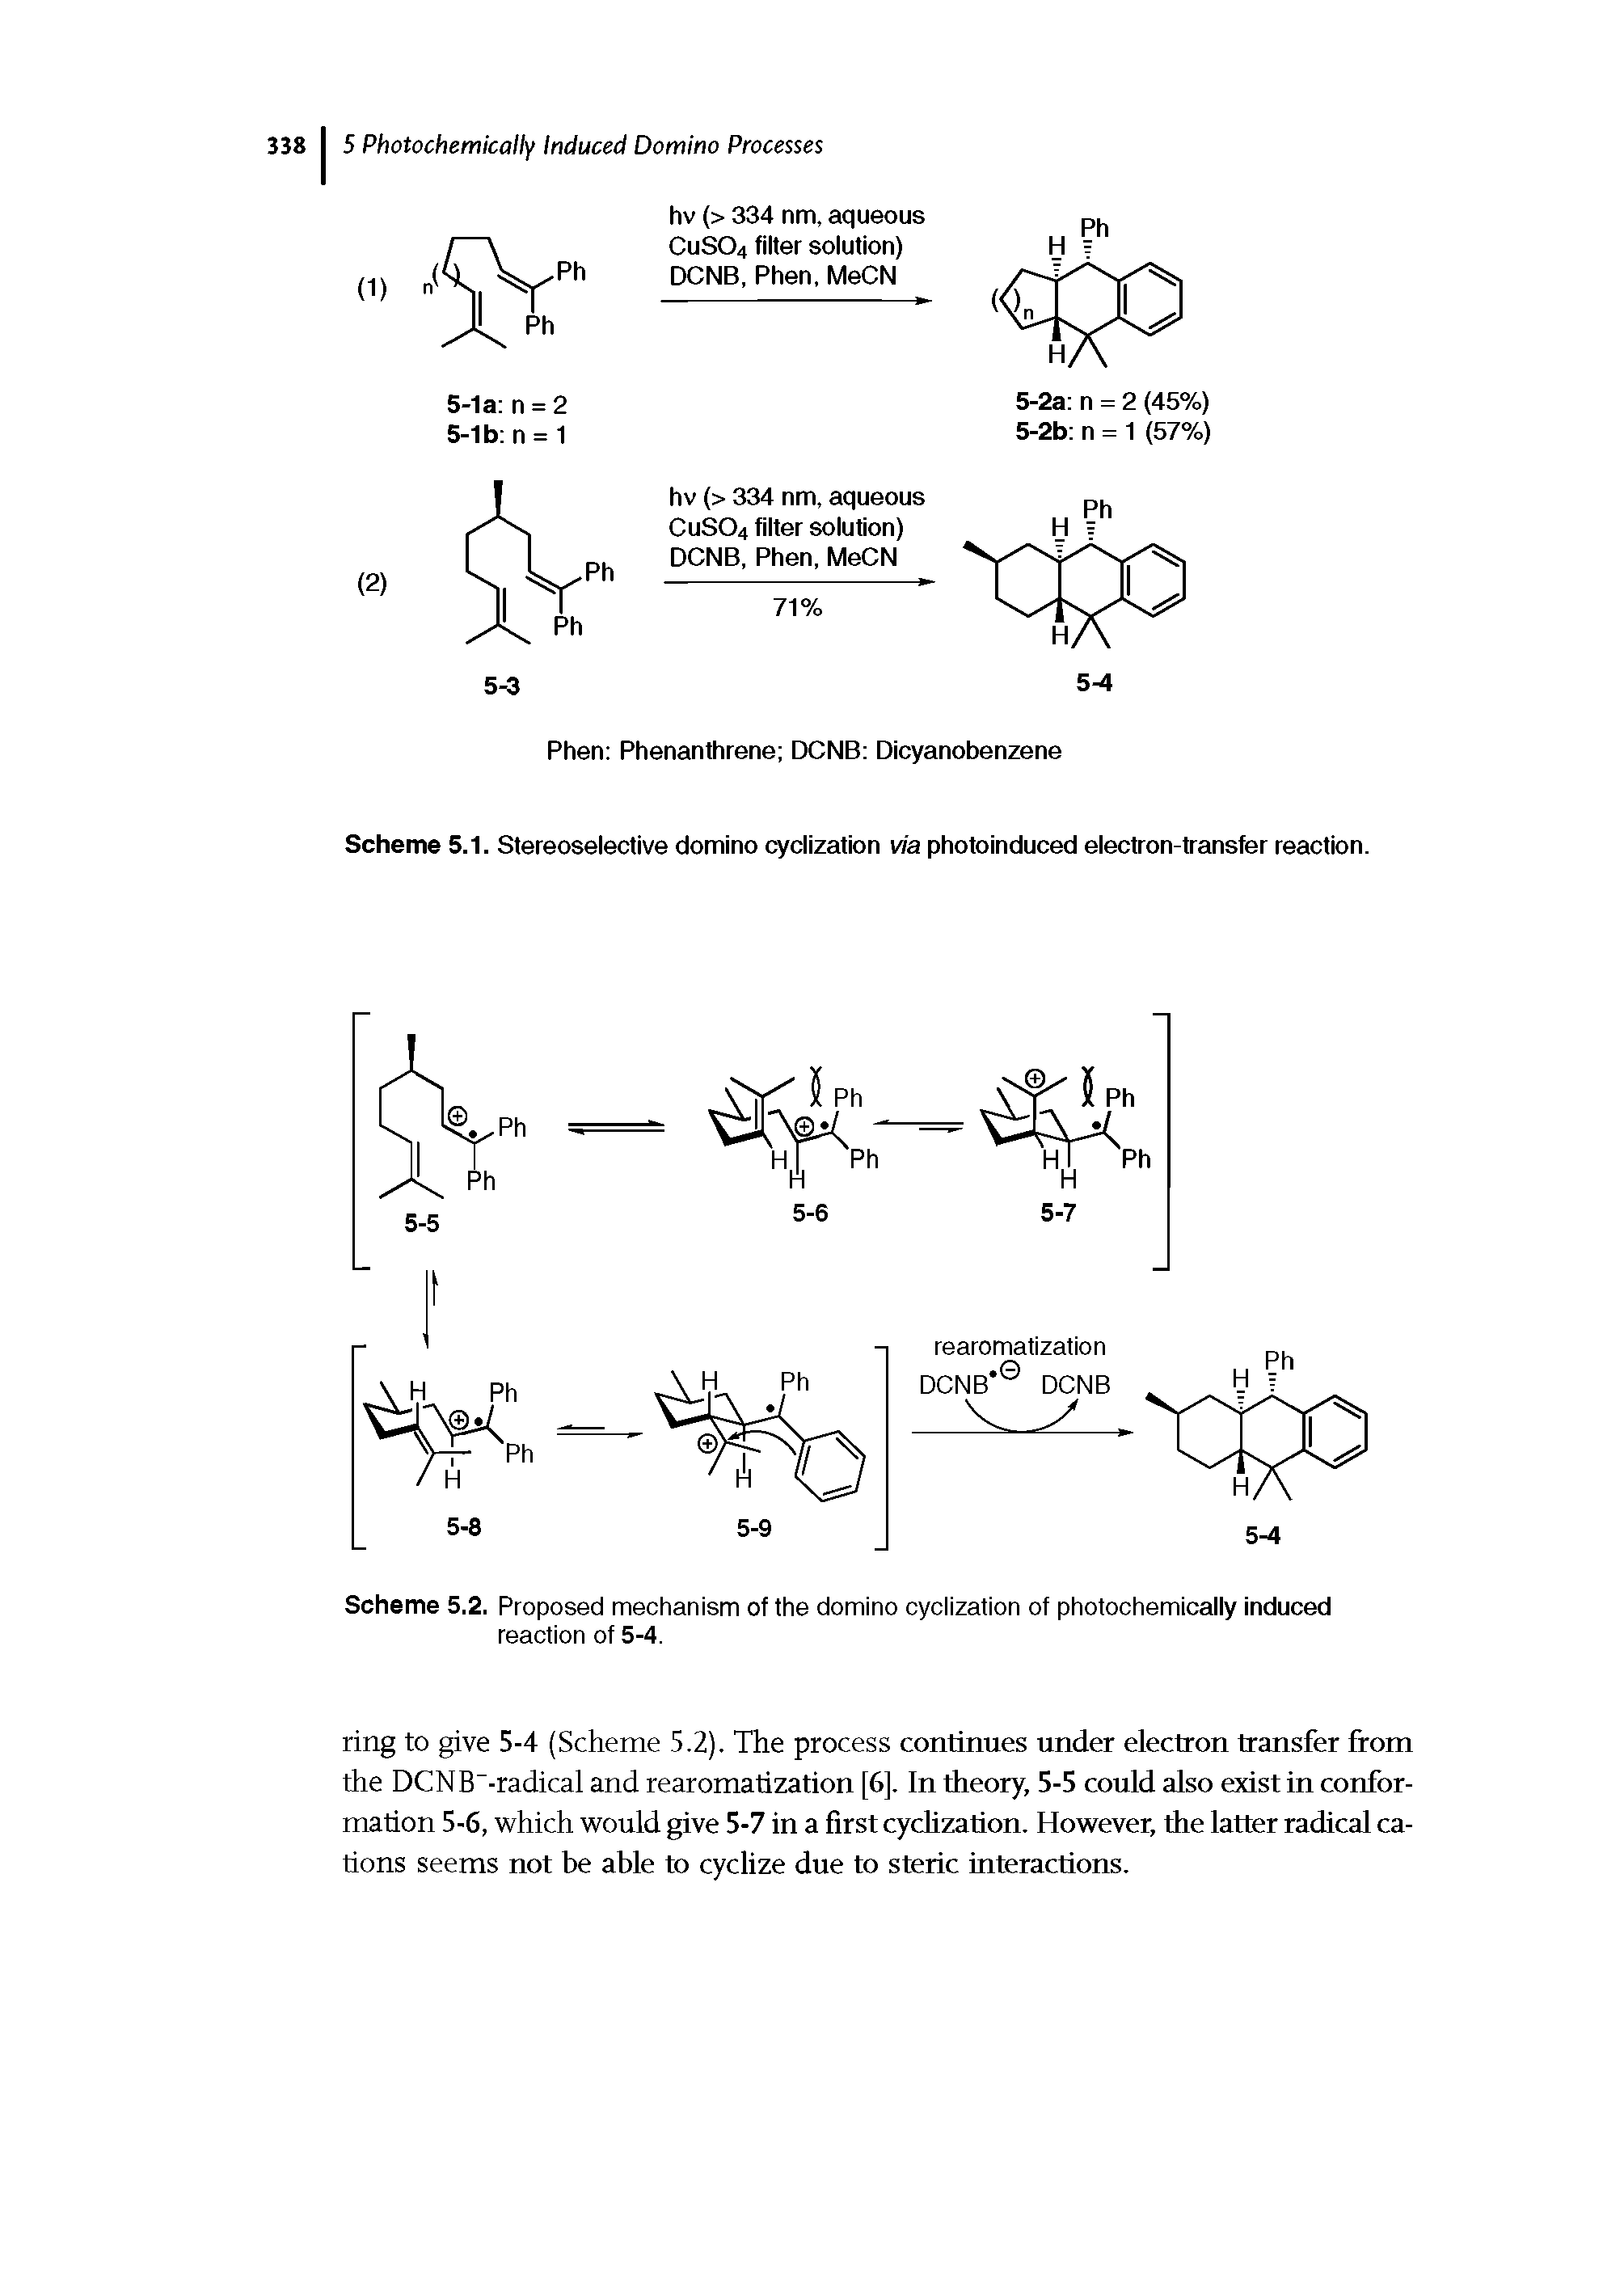 Scheme 5.1. Stereoselective domino cyclization via photoinduced electron-transfer reaction.